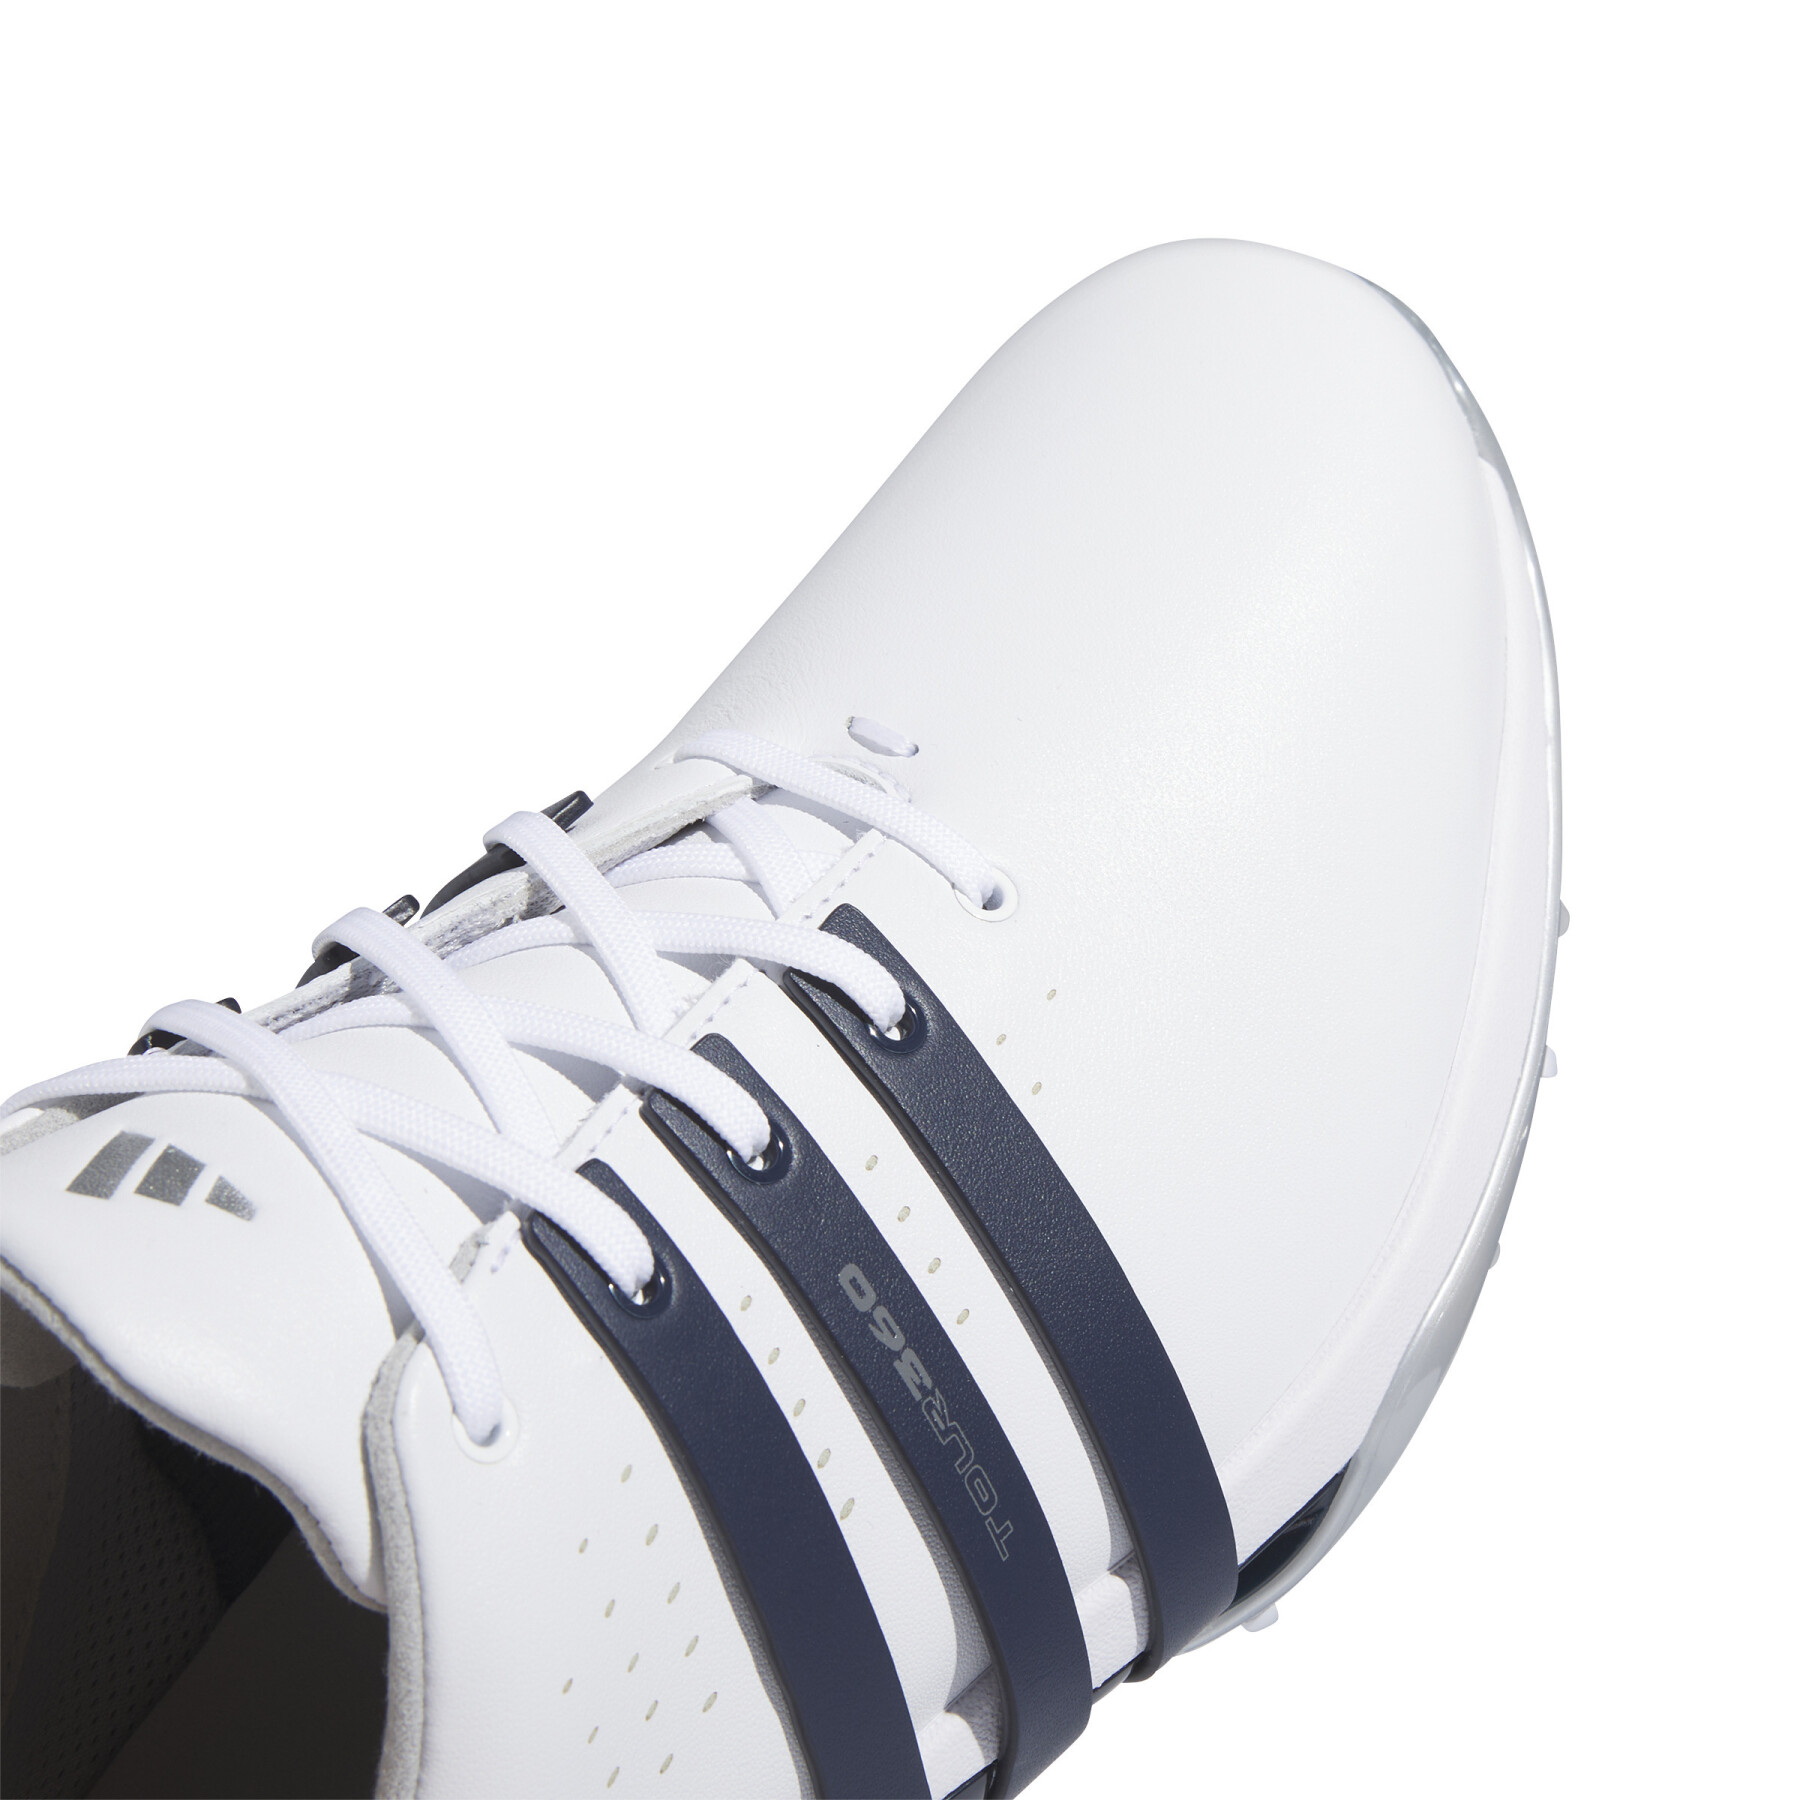 Zapatos de golf con clavos adidas Tour360 24 Boost